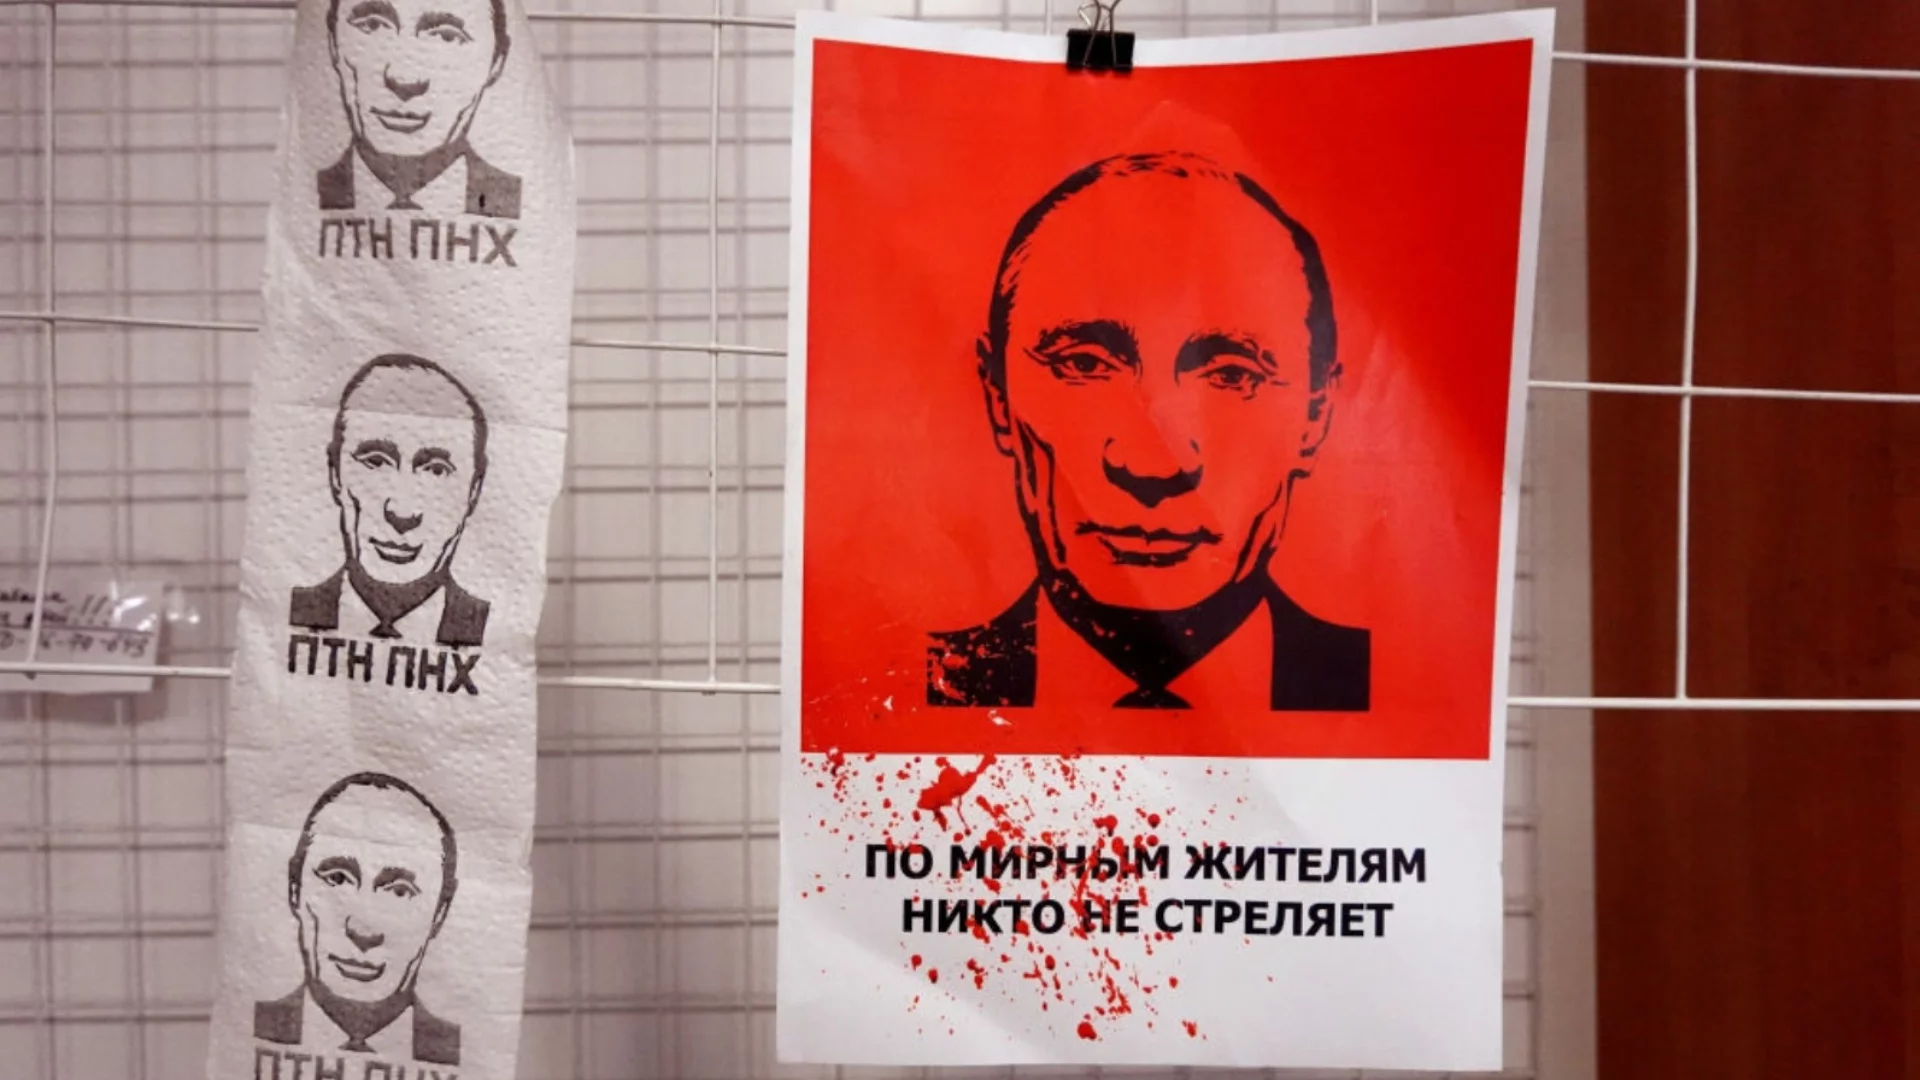 Арест в Дания за връзки с Путин, в България за същото се разсейваме: Кремъл действа (ВИДЕО)